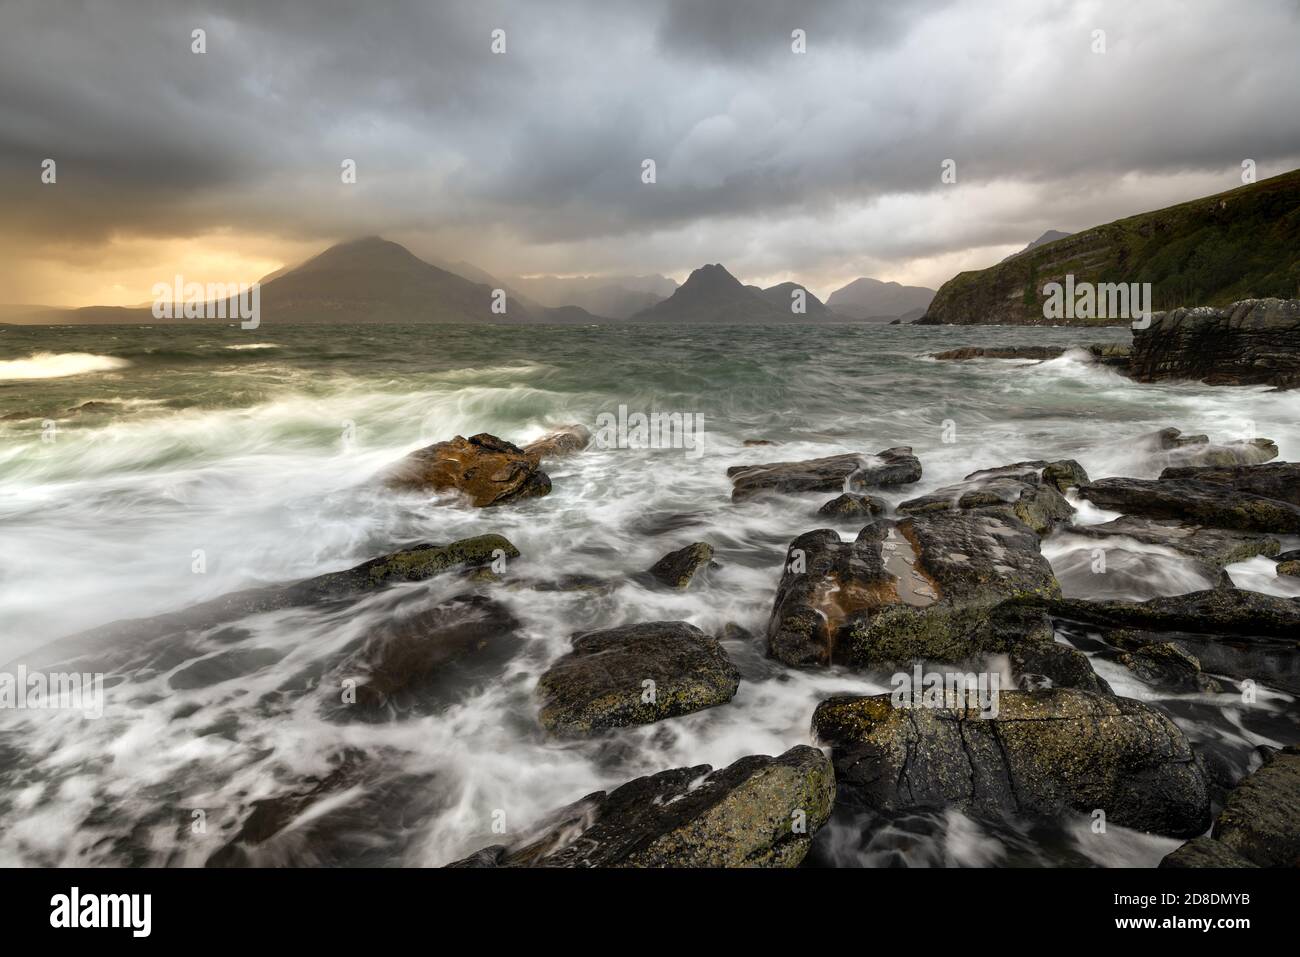 Rough waves crashing on rocky shoreline at Elgol on the Isle of Skye, Scotland, UK. Stock Photo